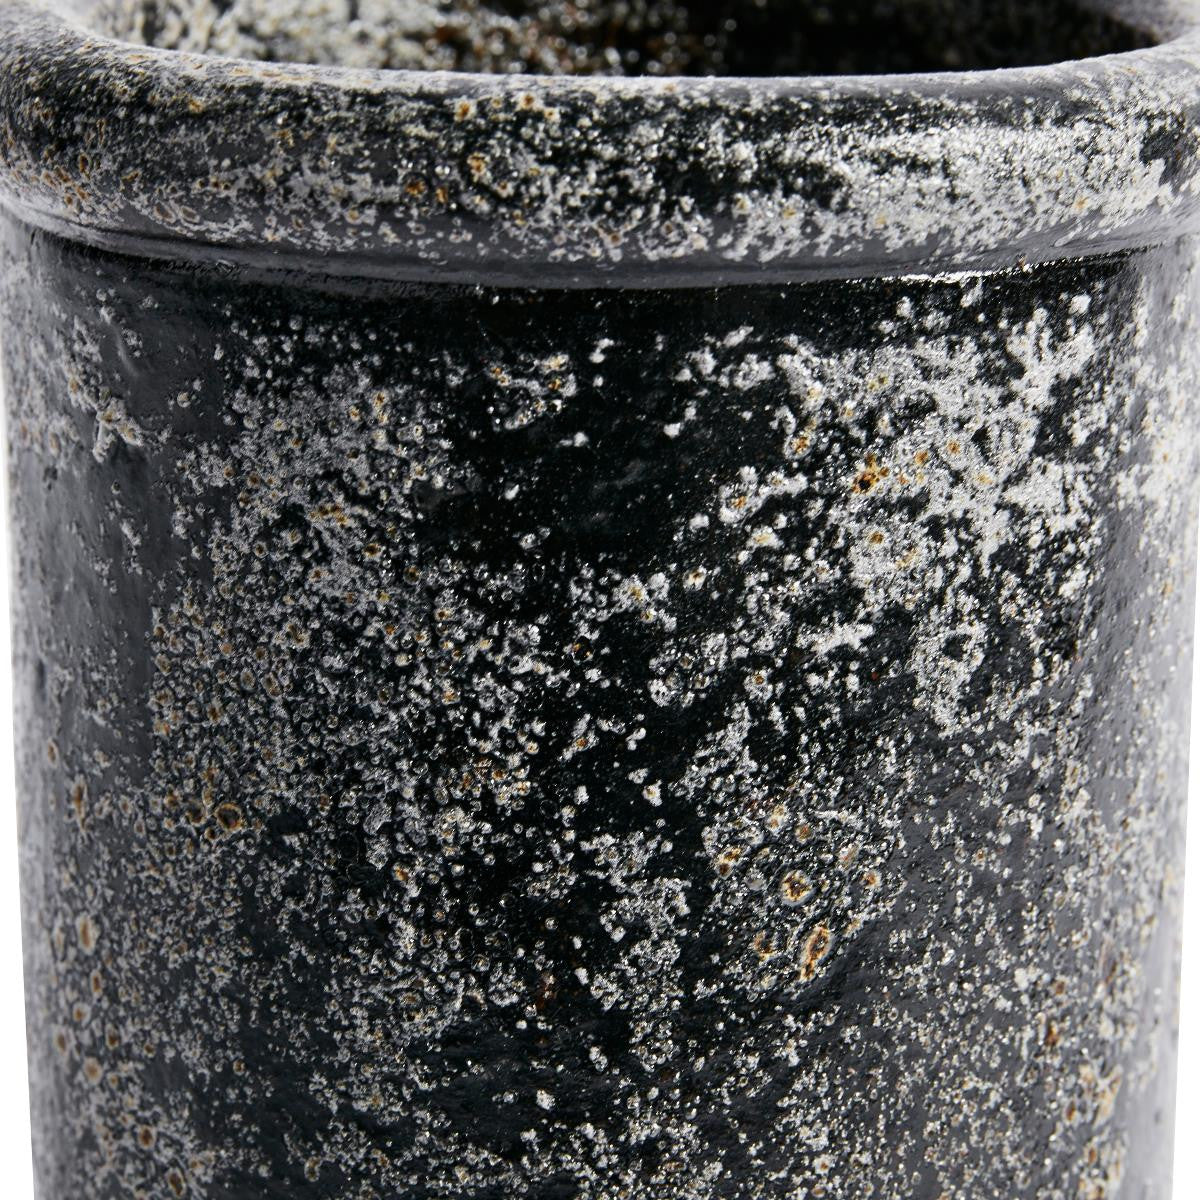 Vase Cylinder metallic finish